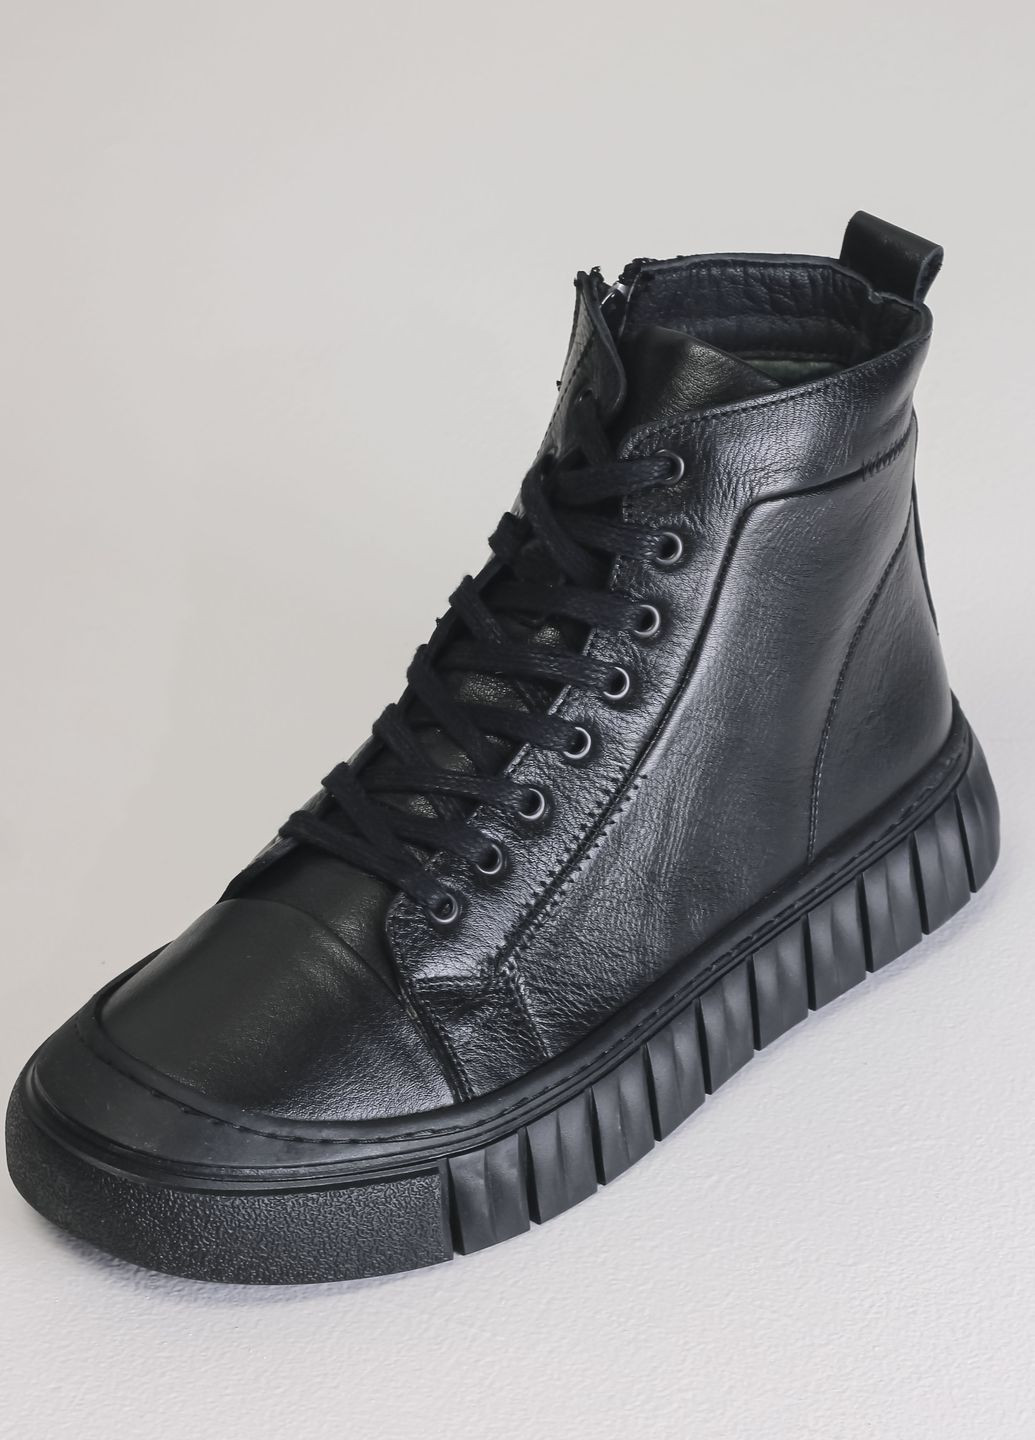 Черные осенние ботинки осенние черные кожаные Bravelli